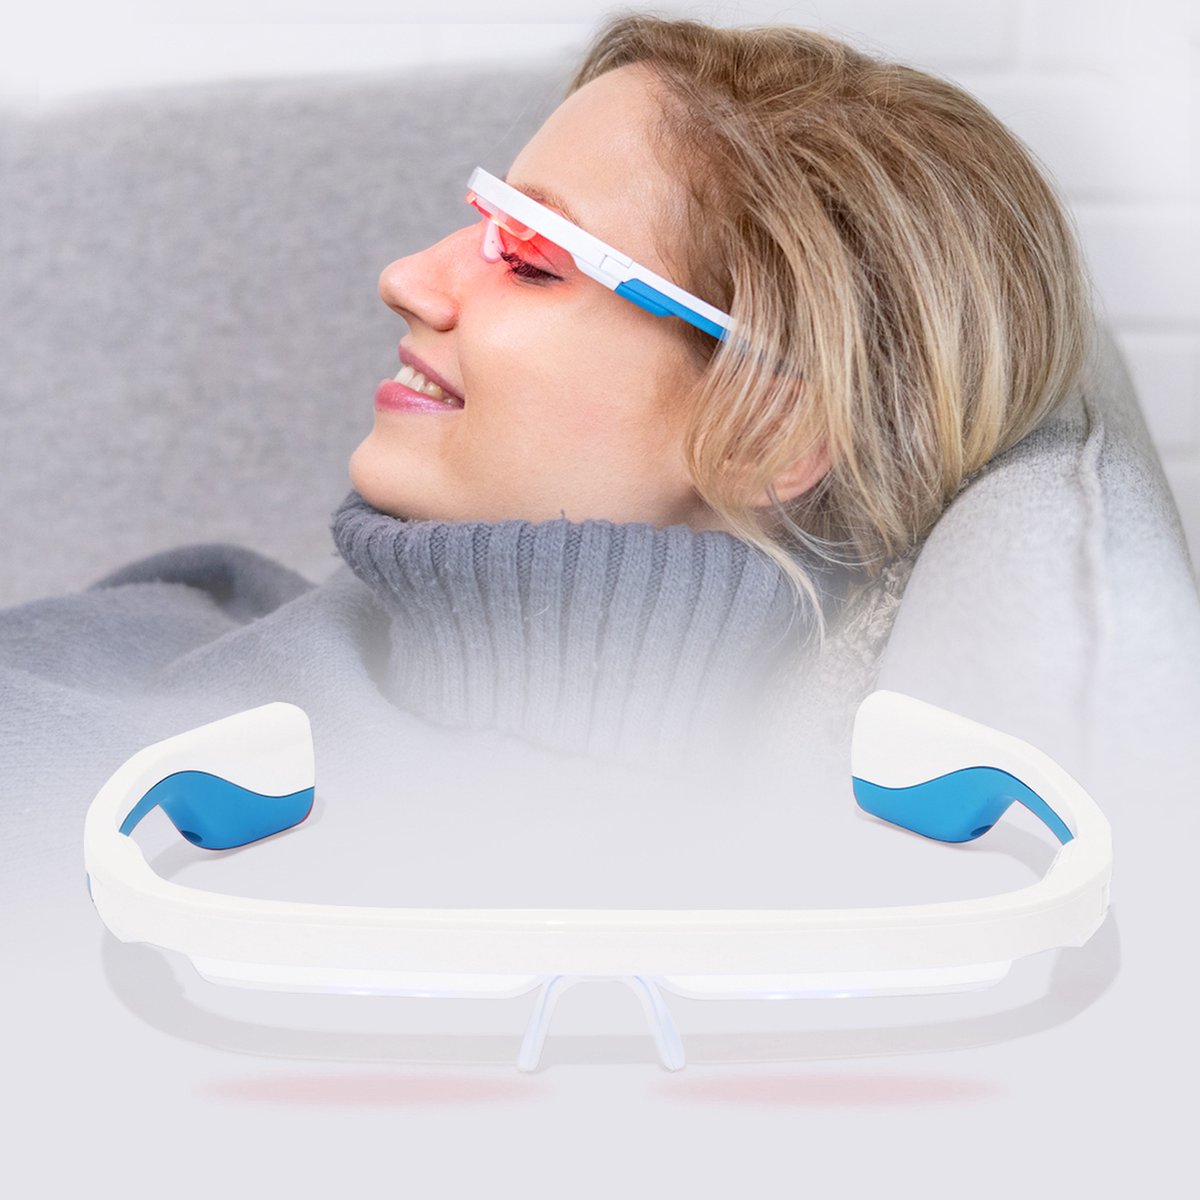 AYO+ lichttherapiebril - Ervaar de beste daglichtbril - Gebruiksvriendelijk en effectief alternatief daglichtlamp - Persoonlijke begeleiding via premium AYO-app (inbegrepen) - UNIEK: inclusief rood licht (670 nm) functie voor 'ooggezondheid' - ayo